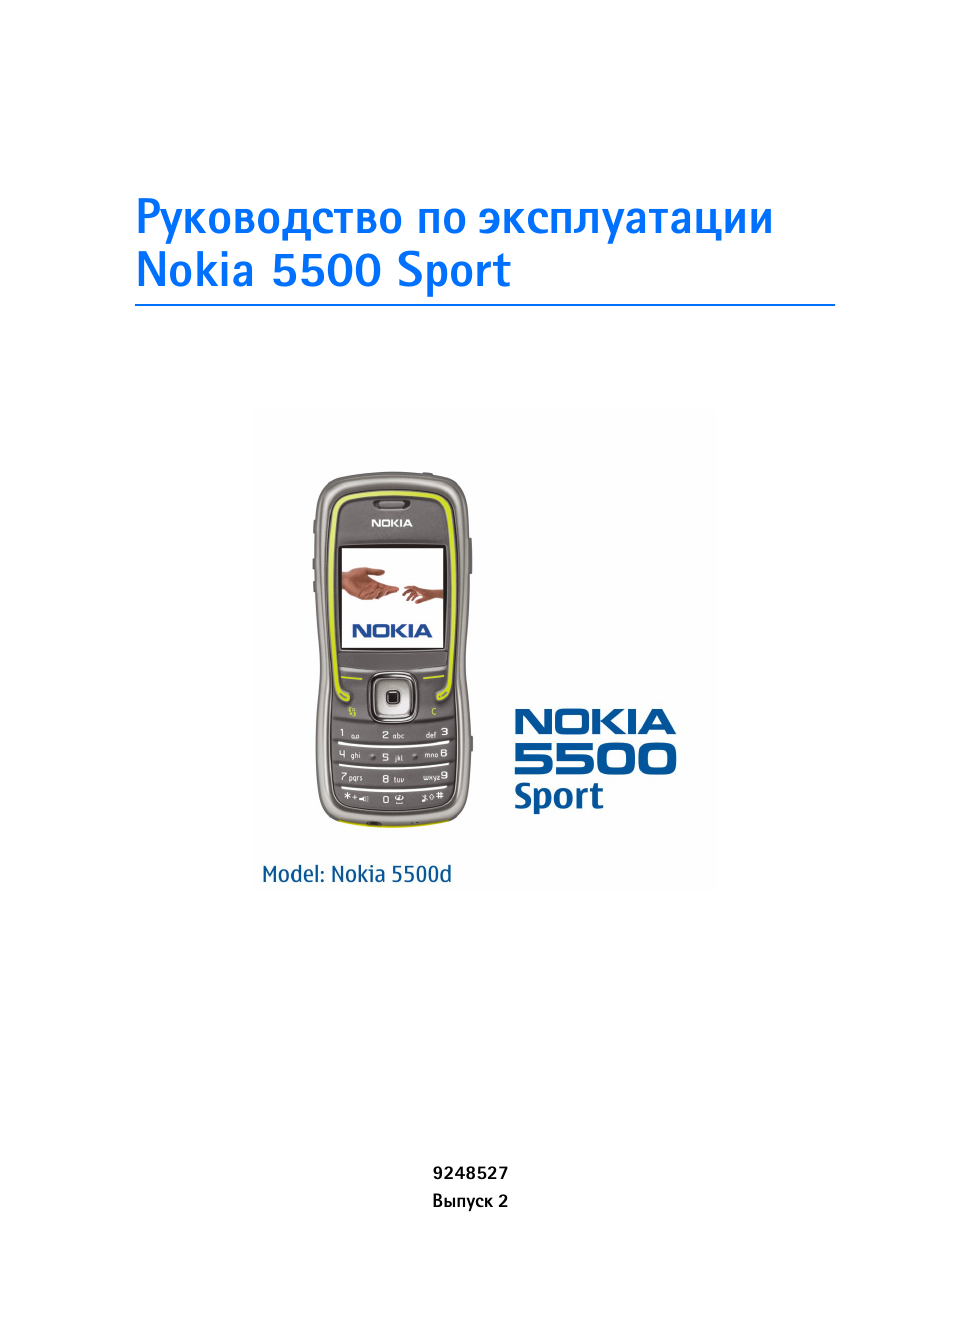 Телефоны нокиа инструкция. Nokia 5500. Телефон Nokia 5500. Nokia 5500 Sport. Телефон нокия кнопочный инструкция по применению.